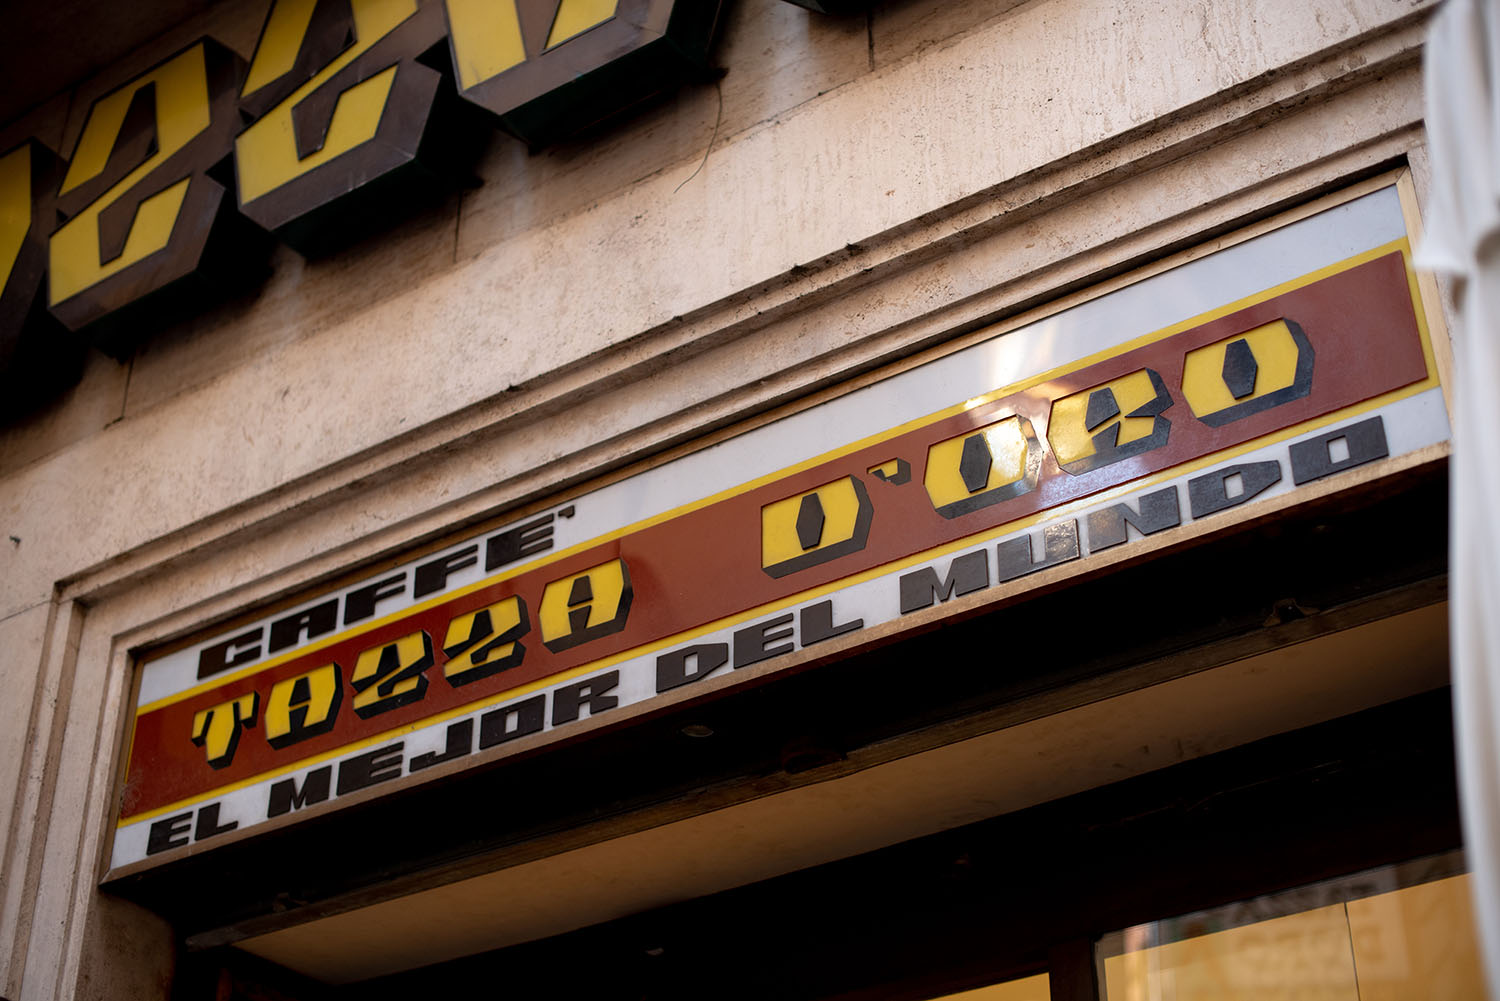 Coco & Vera - Vintage sign at La Tazza d'Oro cafe in Rome